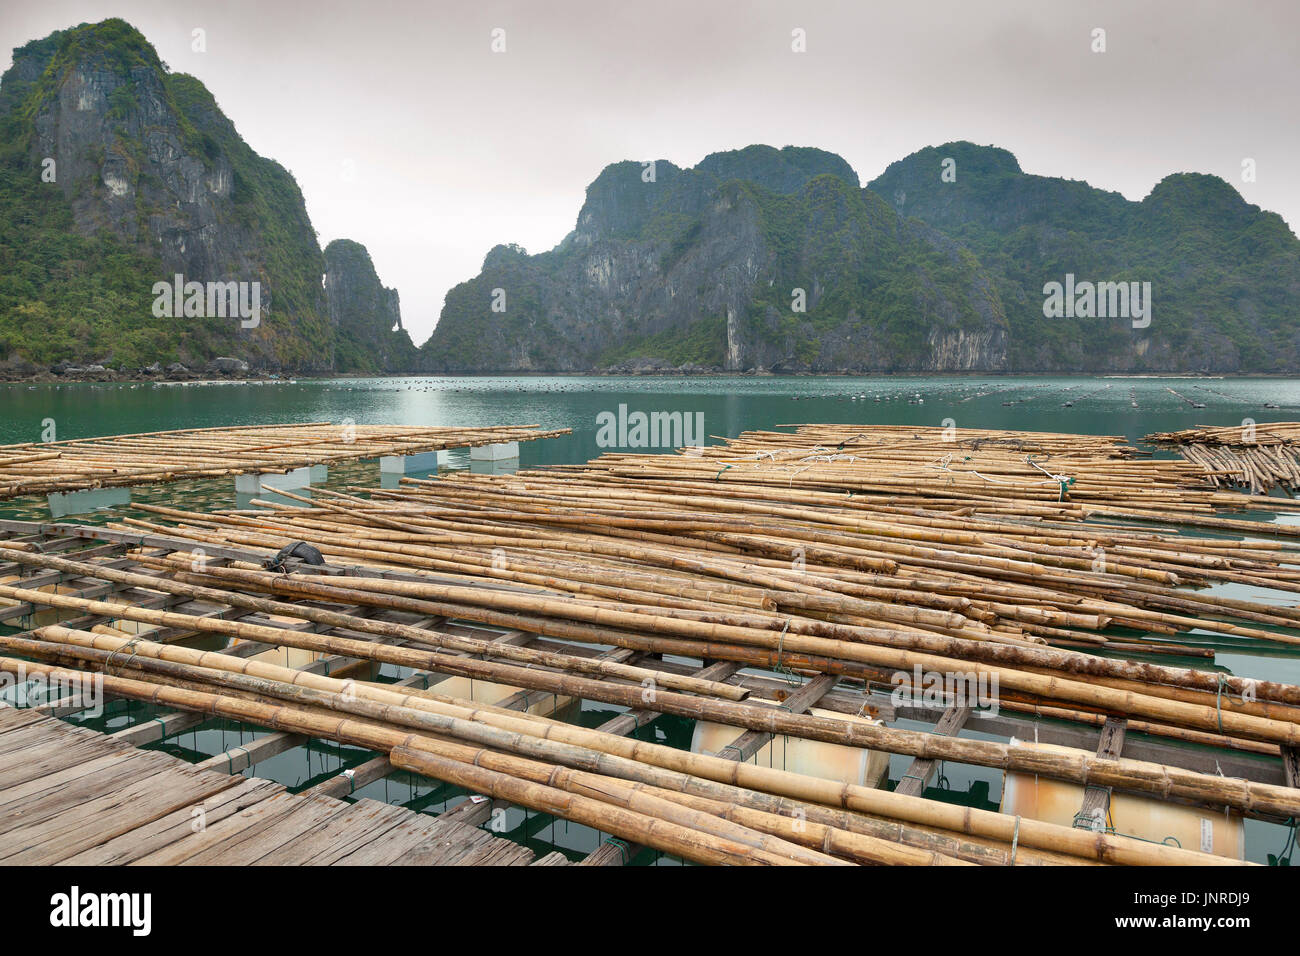 La Bahía de Halong, Vietnam, perla en la infraestructura agrícola Foto de stock